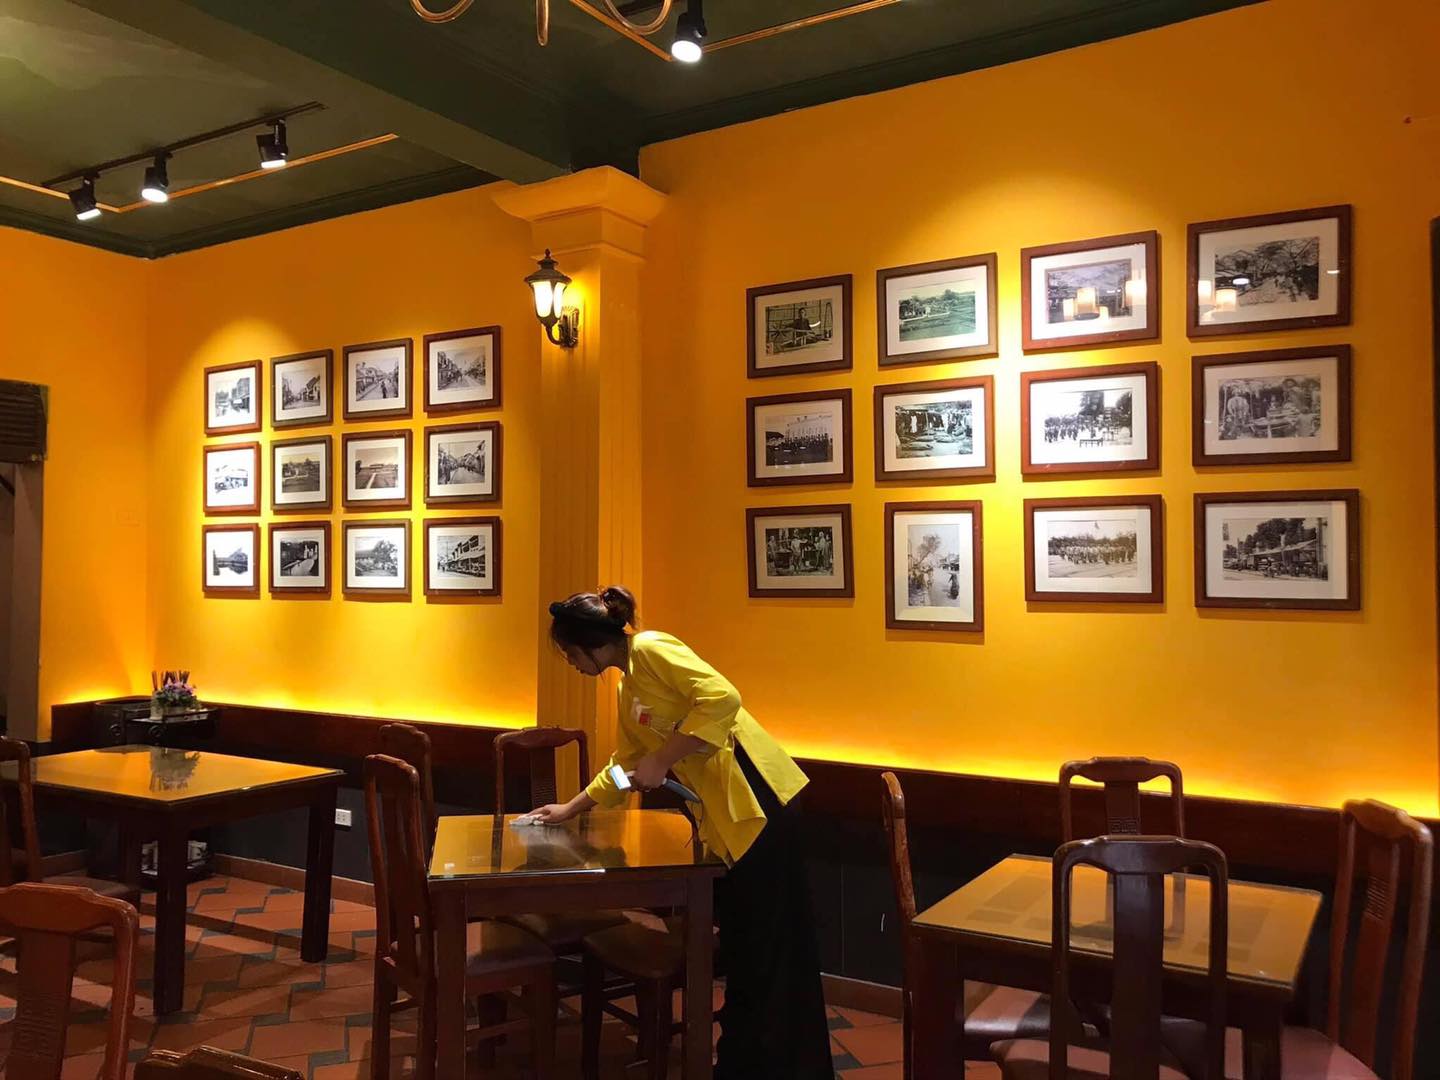 Nhà hàng 1946 - Nơi lưu giữ nét ẩm thực Hà Nội truyền thống trong suốt những năm tháng hiện đại 4